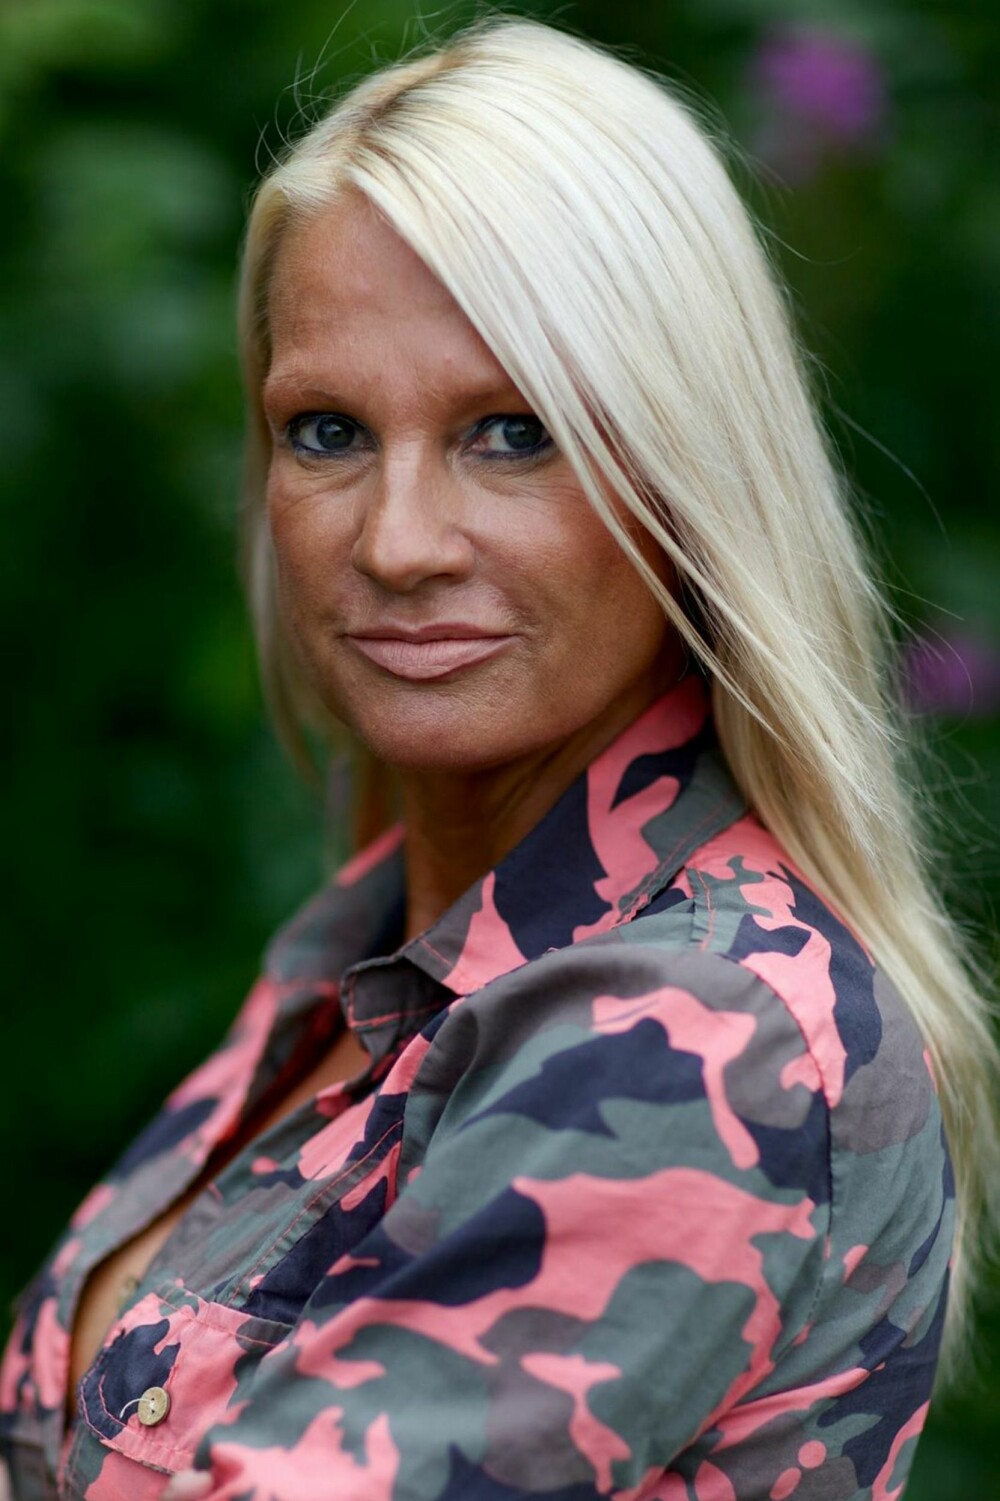 Marita Wennewold Moen: 50 år, fra Fjellhamar, bosatt i Fredrikstad. Selvstendig næringsdrivende innen kapitalinnhenting. Samboer, to sønner på 24 og 25 år.